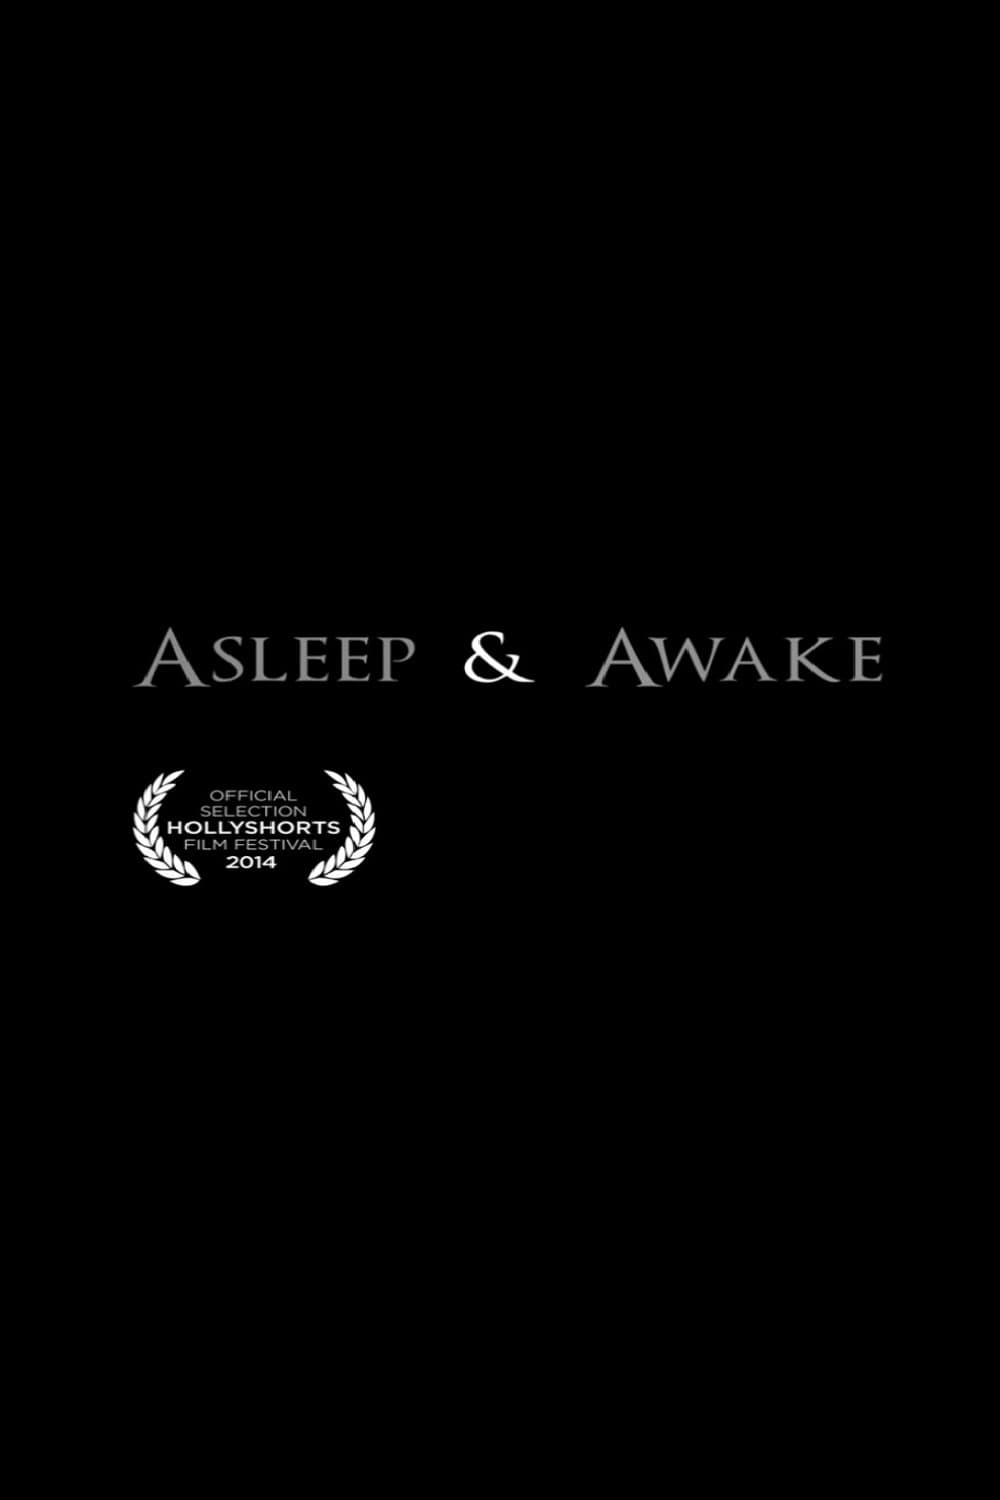 Asleep & Awake